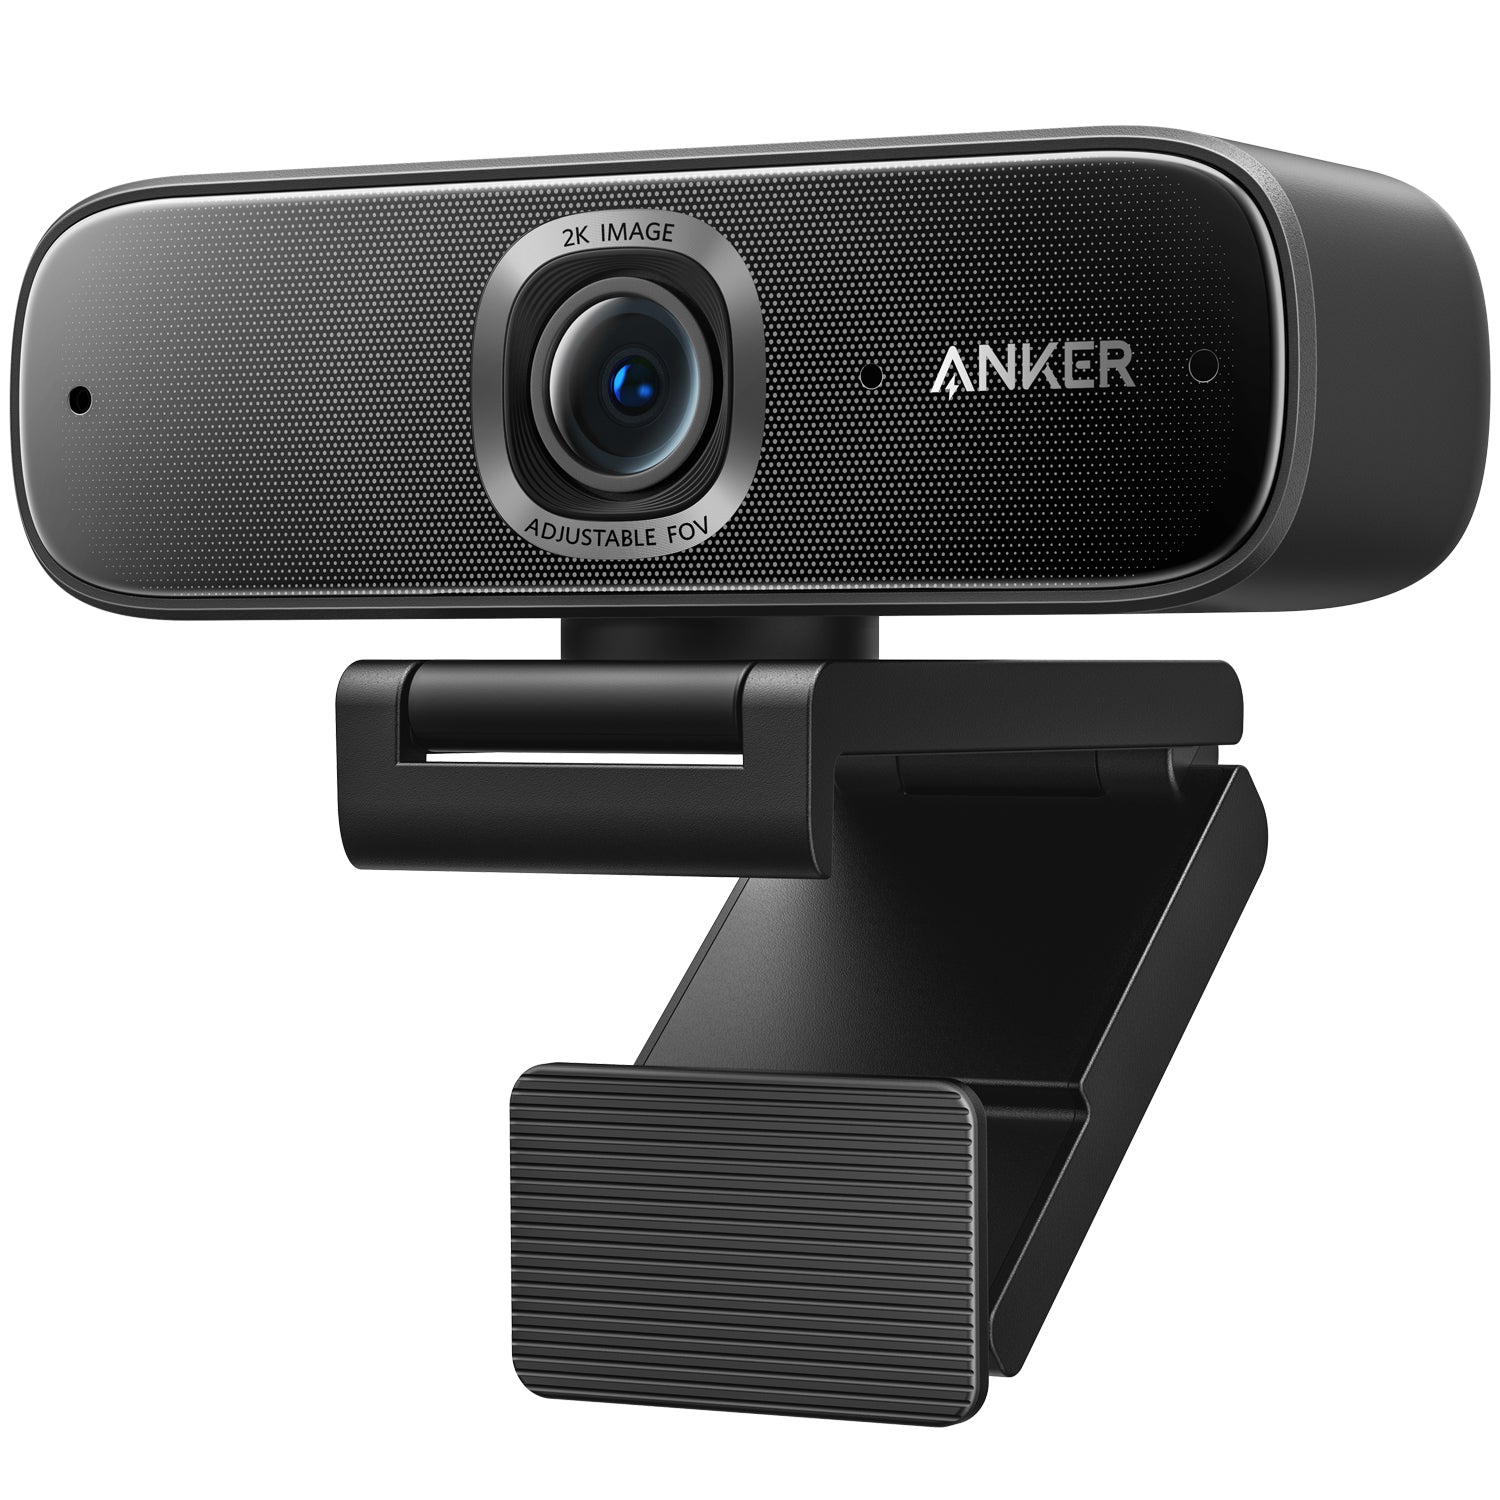 Anker PowerConf C302 | ウェブカメラの製品情報 – Anker Japan 公式サイト